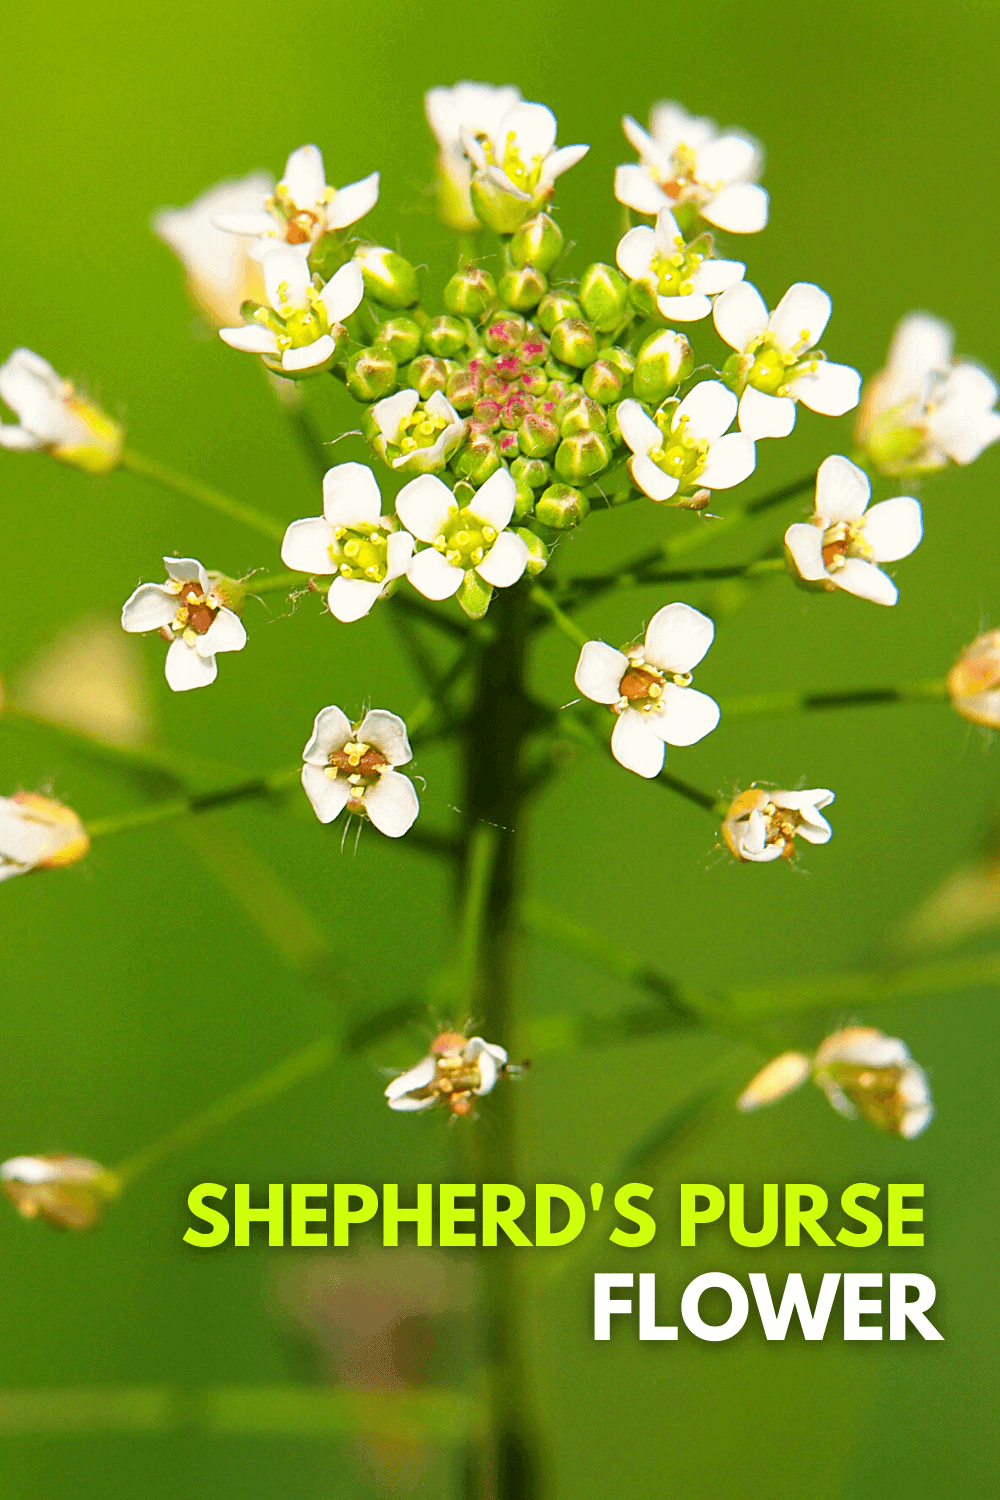 Identifying Shepherd's Purse Weed Flower